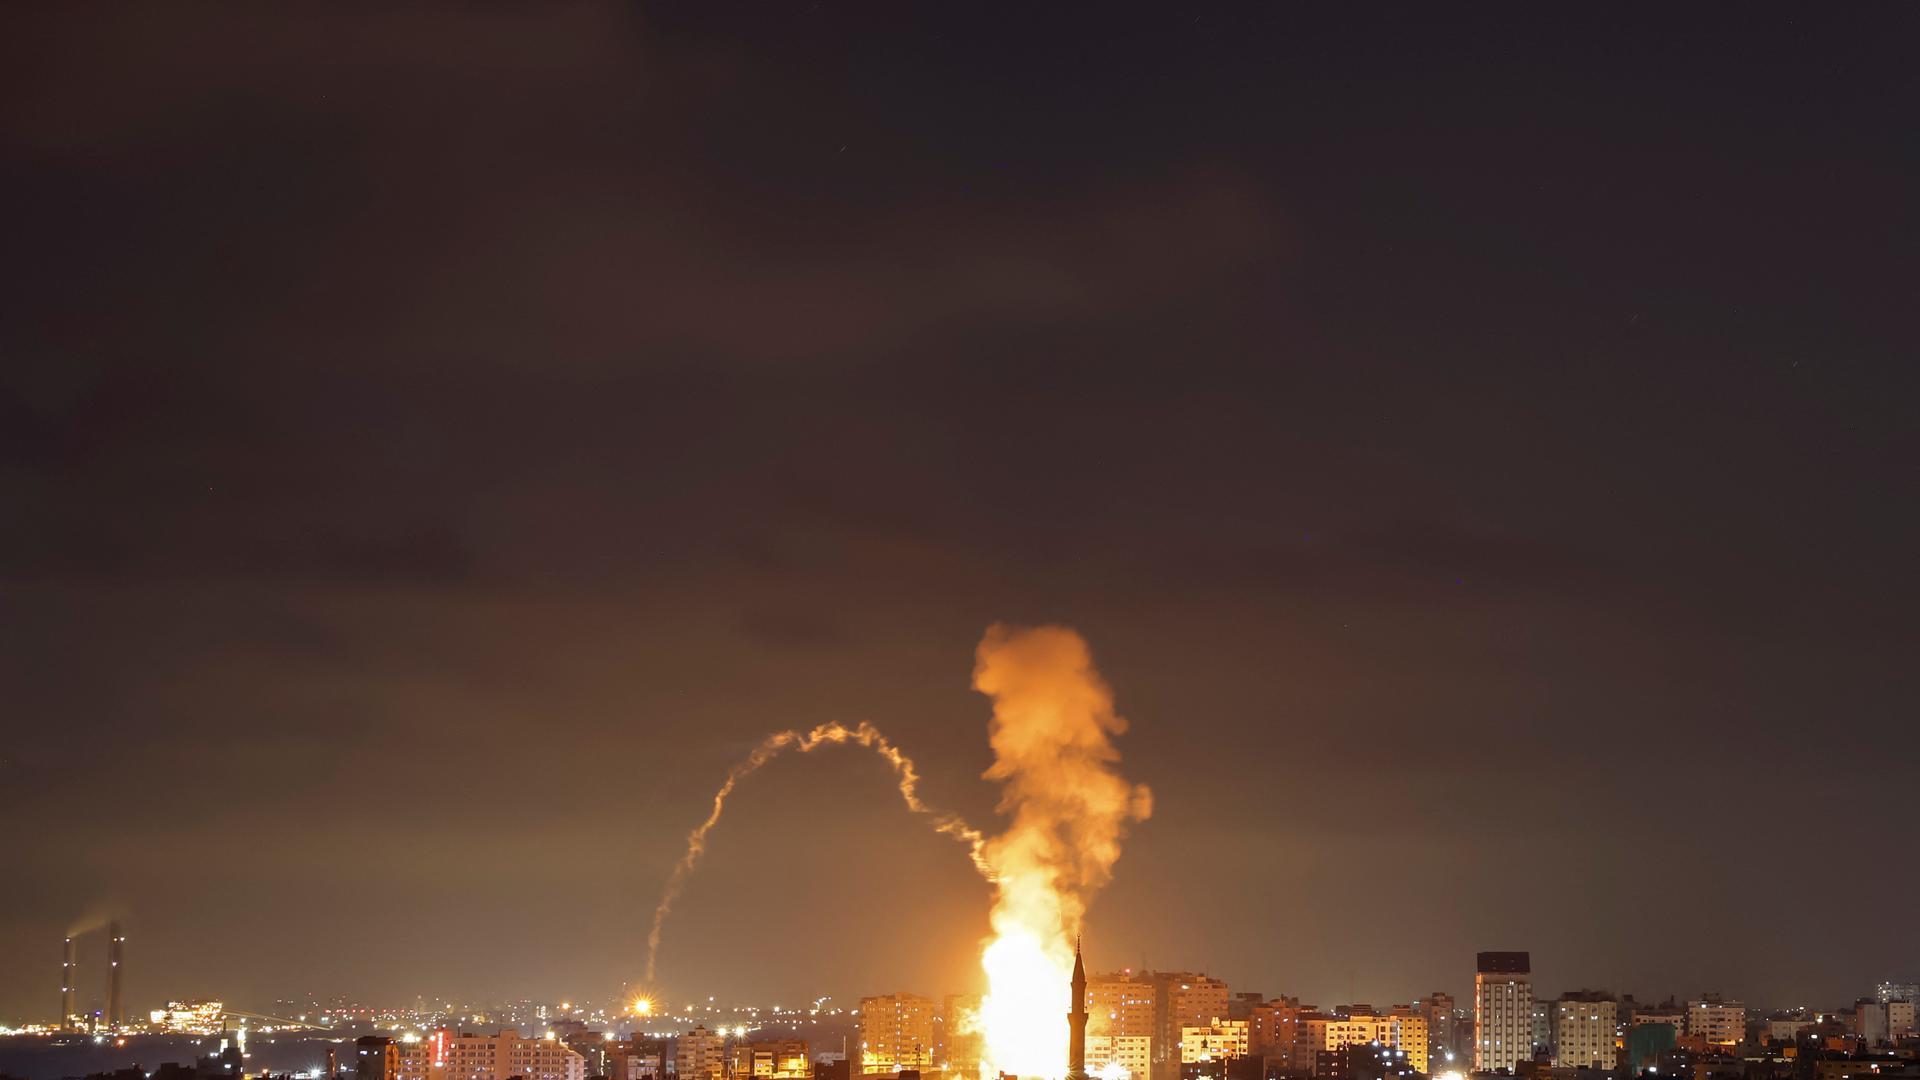 Es ist Nacht; das Bild ist aus großer Ferne aufgenommen. Über Gazastadt sind ein Feuerball und Rauchwolken zu sehen.